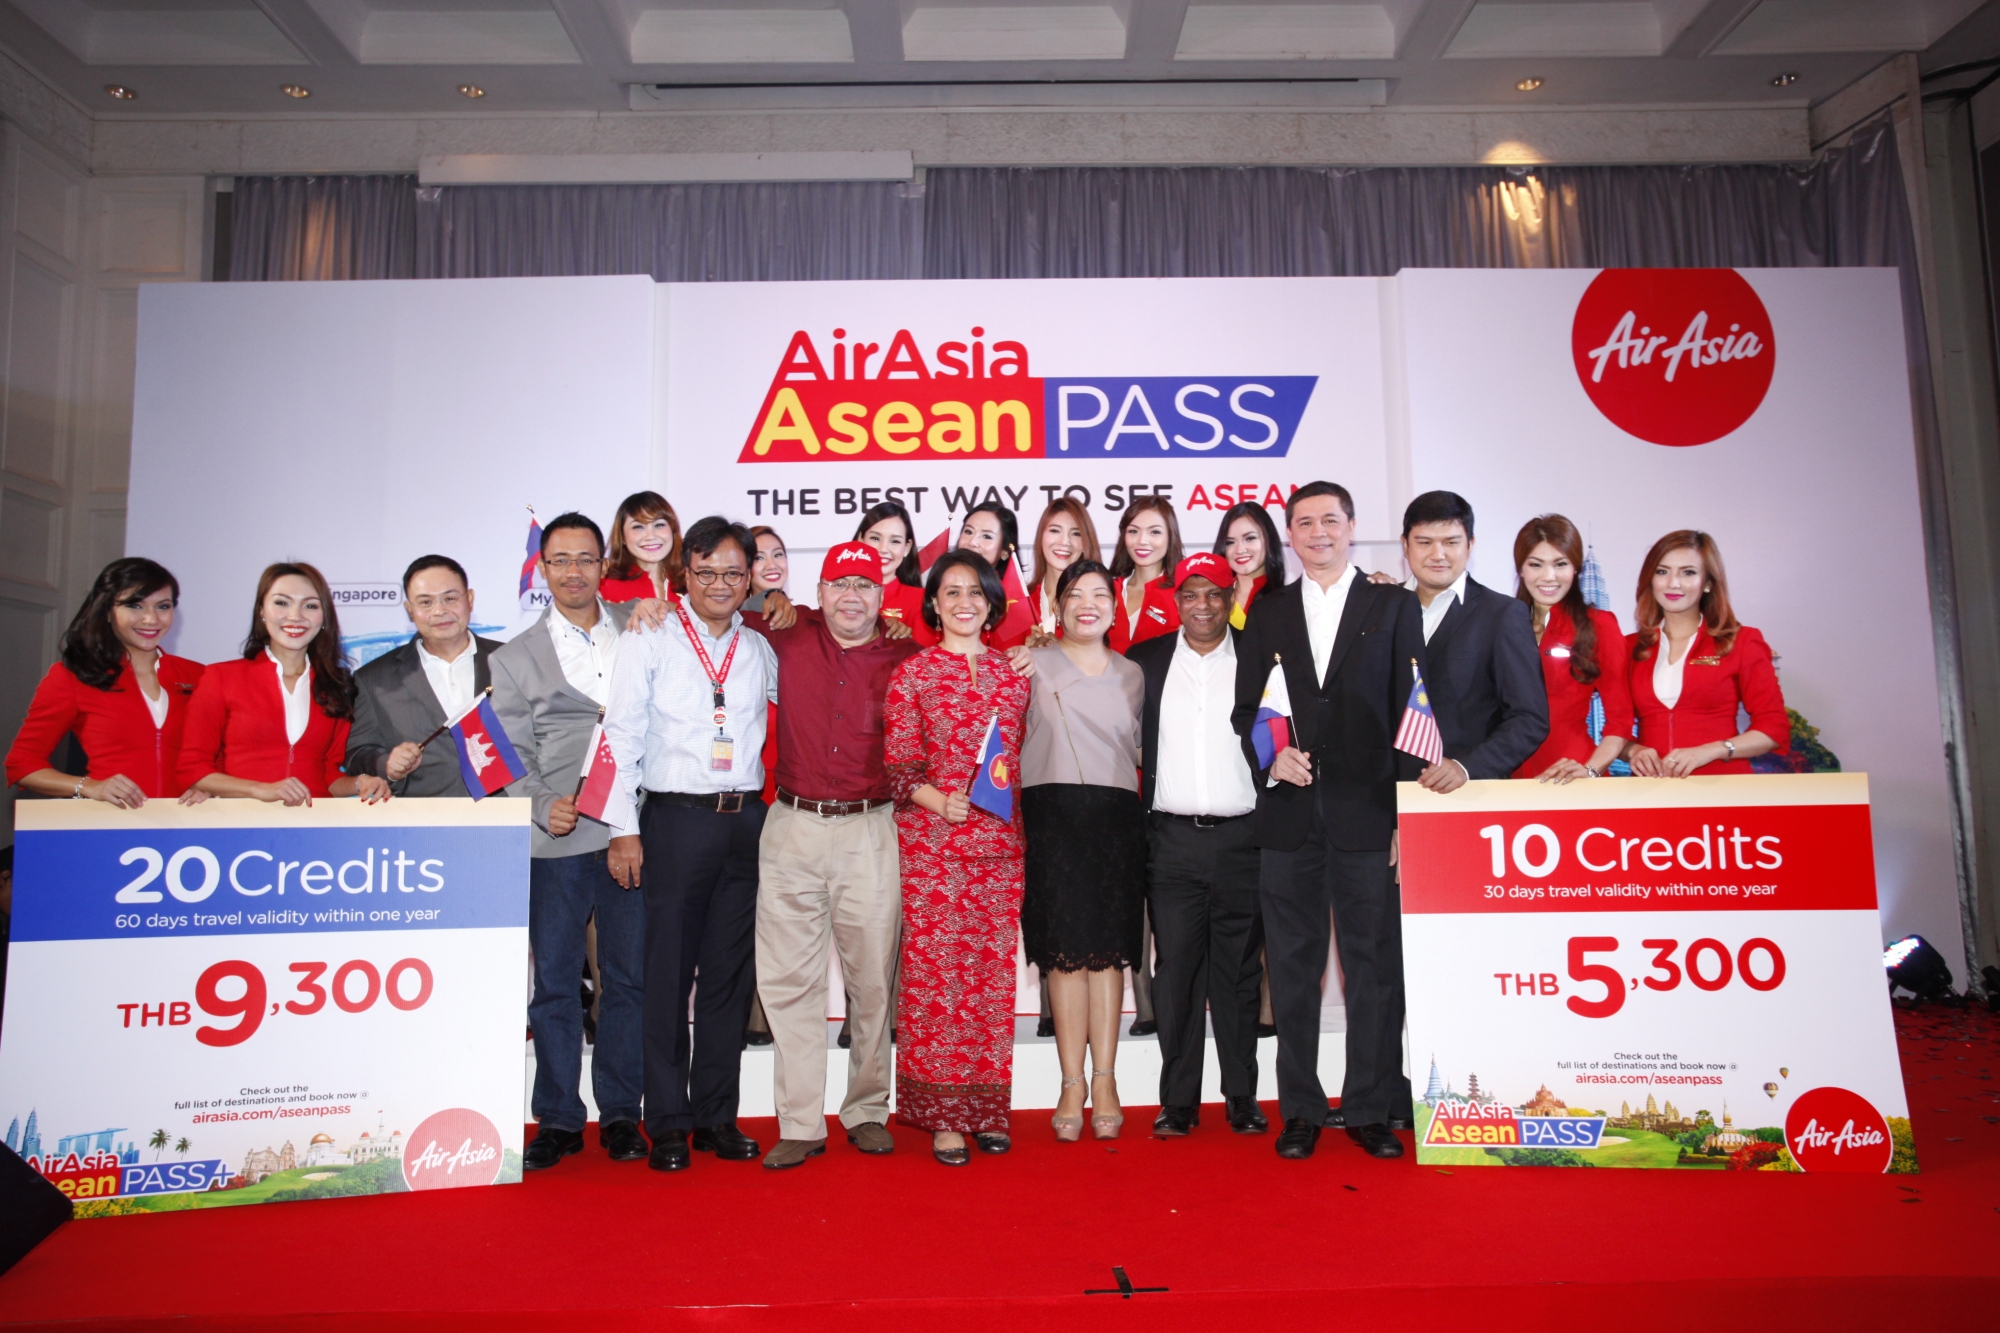 Du lịch dễ dàng cùng thẻ airasia asean pass